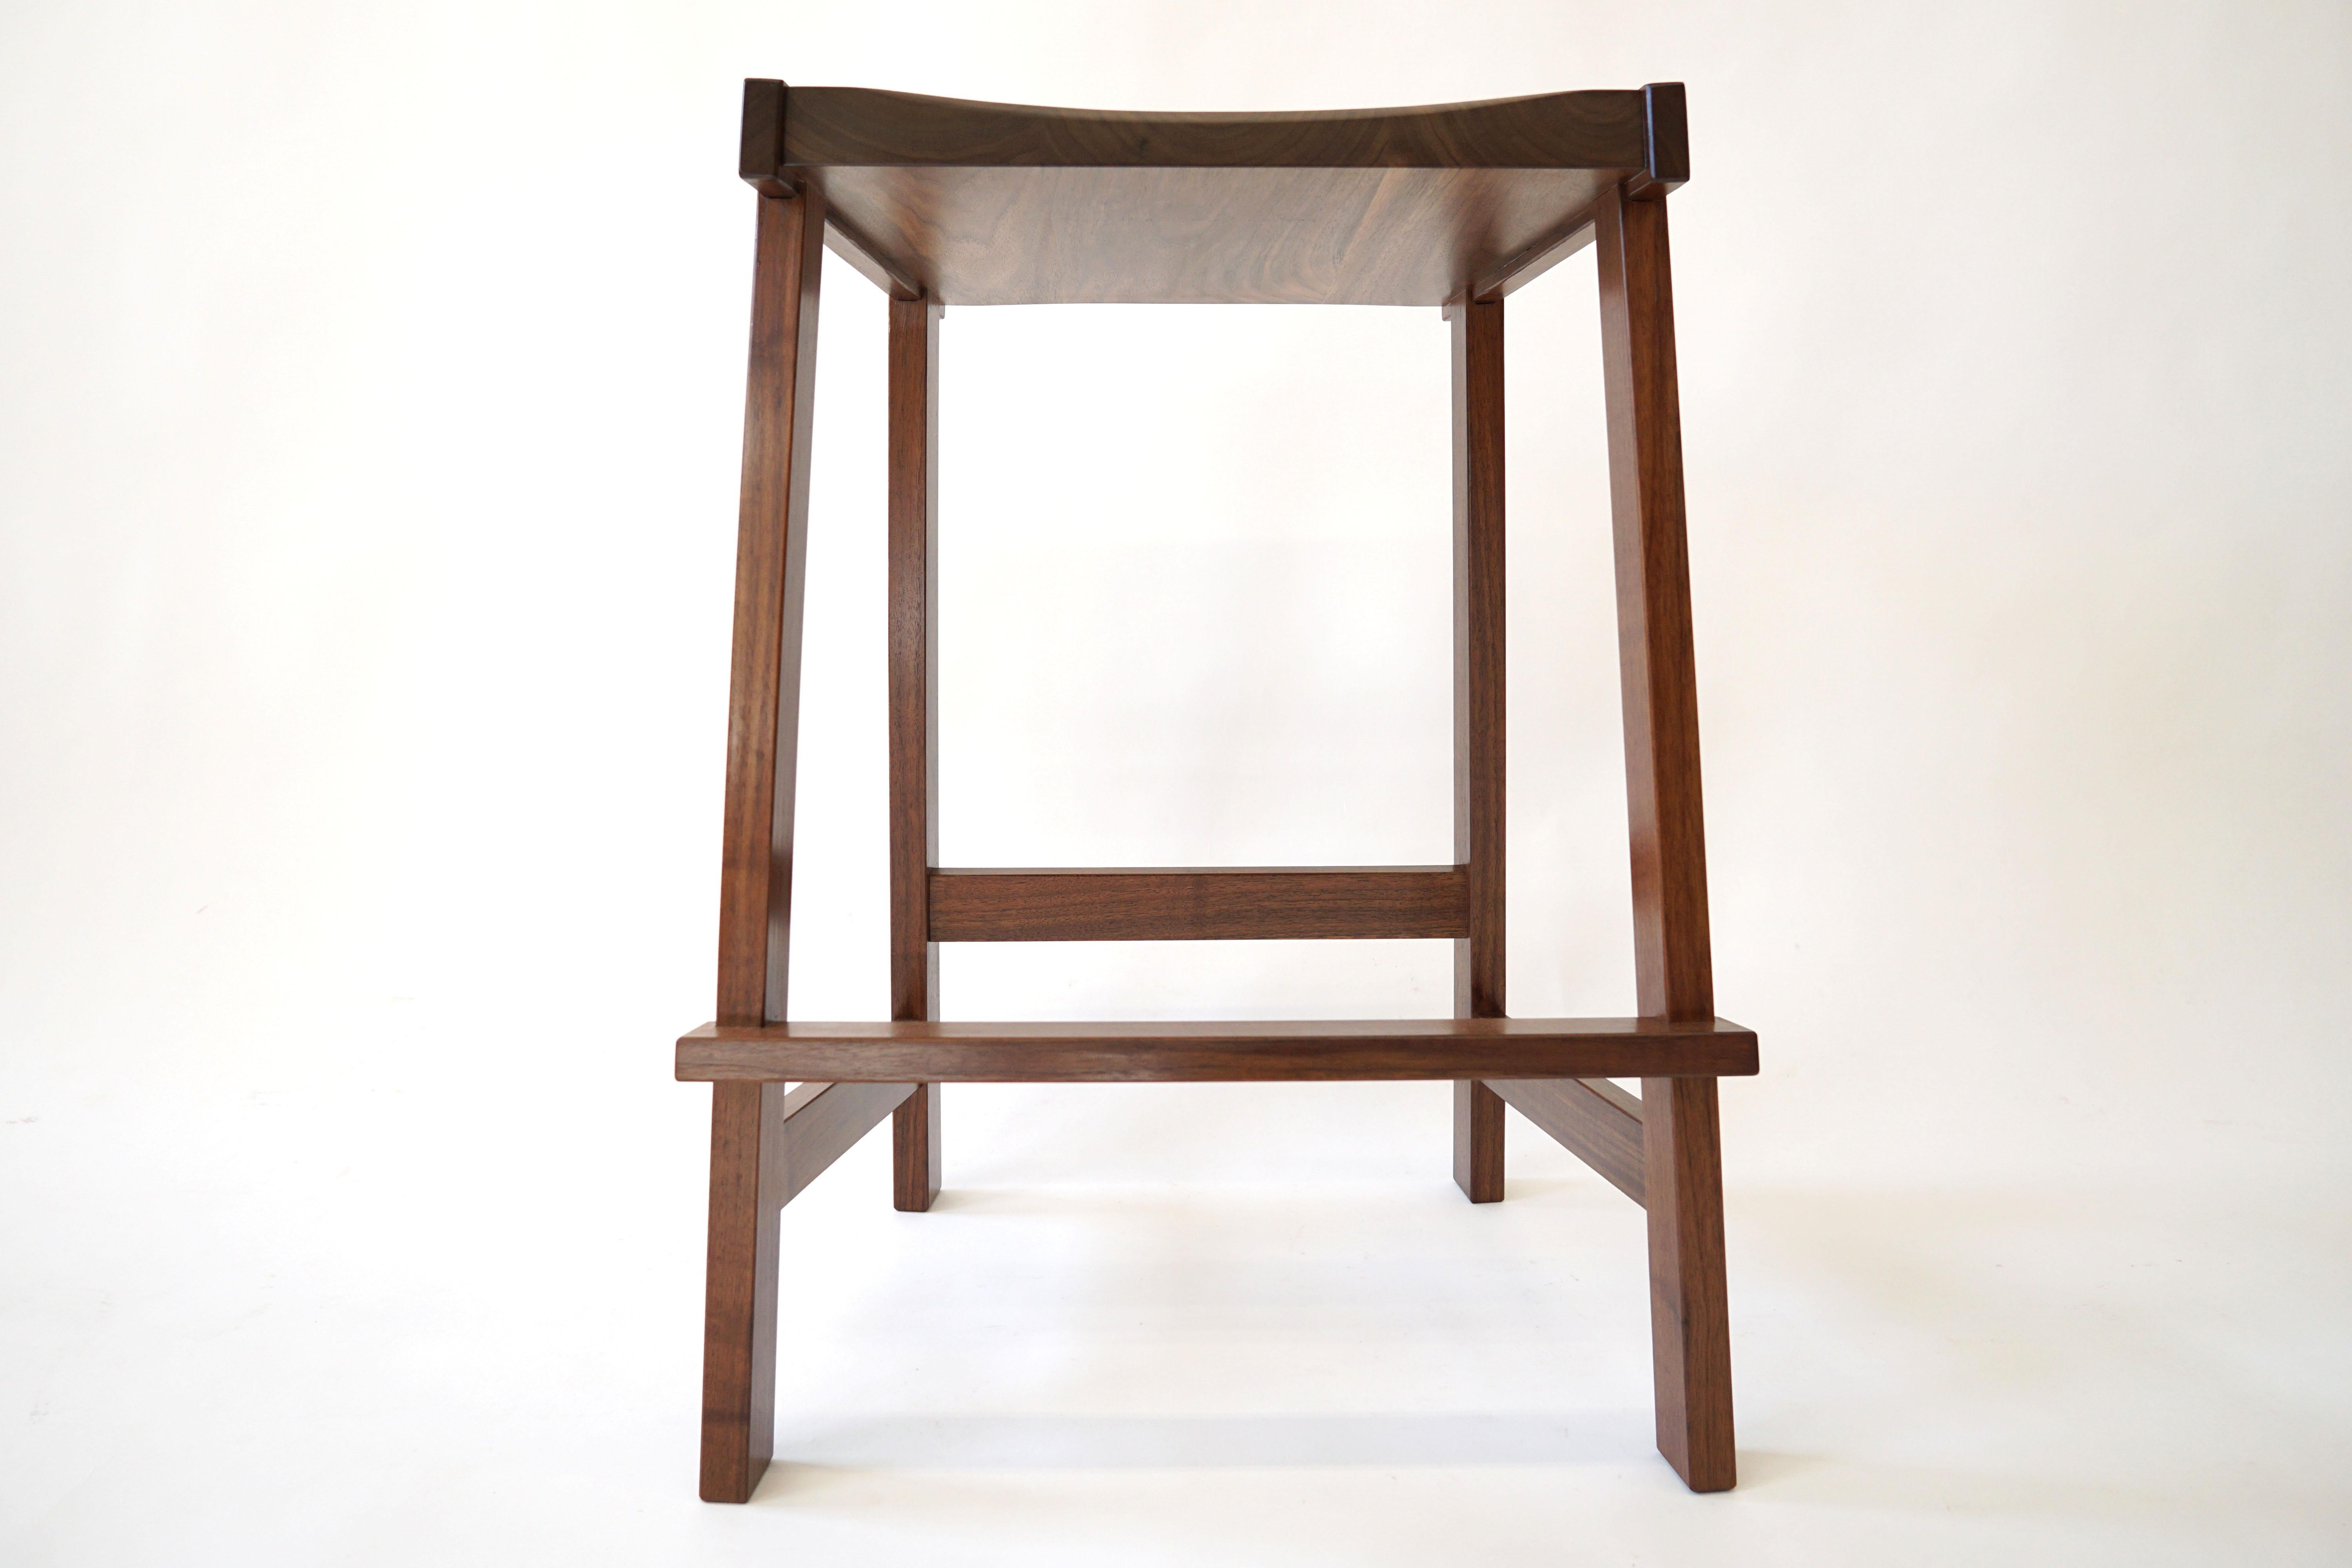 Der Montrose Hocker, eine scharfe, kühne, kantige Form. Hergestellt aus massivem Hartholz mit einem geschnitzten Sitz für mehr Komfort. Konstruiert mit vielen sichtbaren Tischlerarbeiten und interessanten Details. Die Oberseite der Beine sind